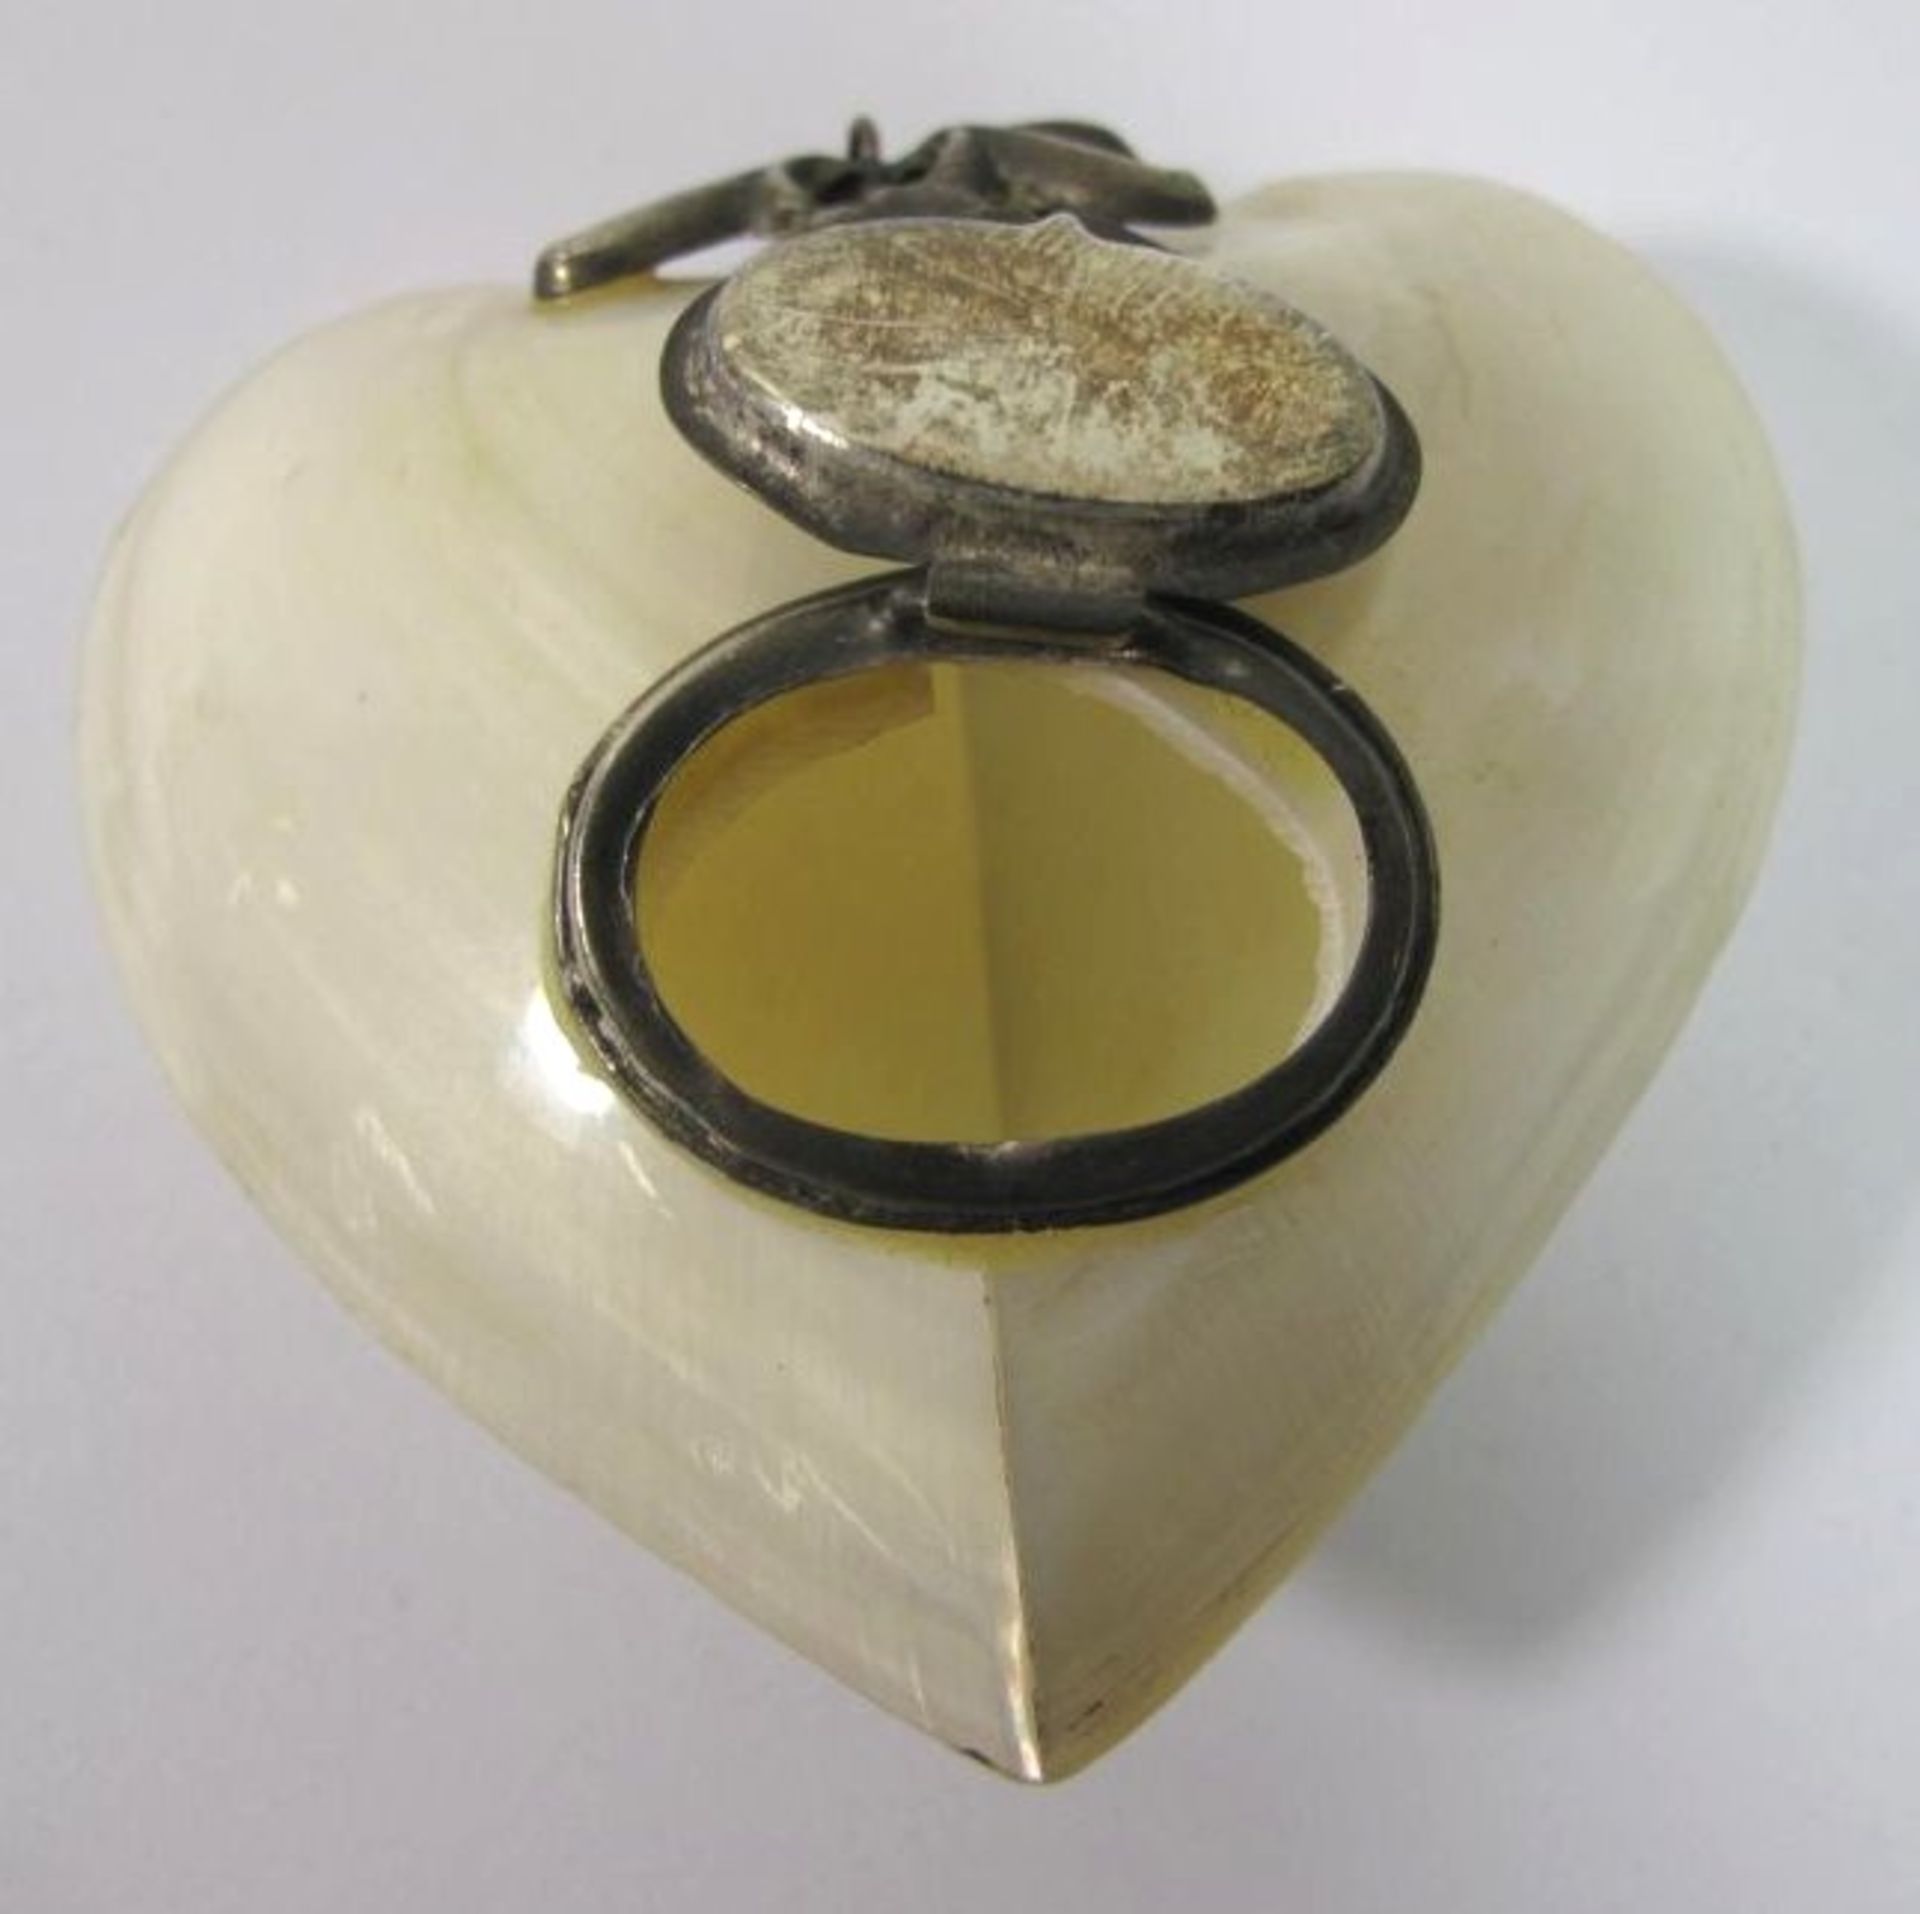 Zierdose, gefertigt aus Muschel, älter, versilberte Monturen, Herzform, B-6cm. - Bild 4 aus 4